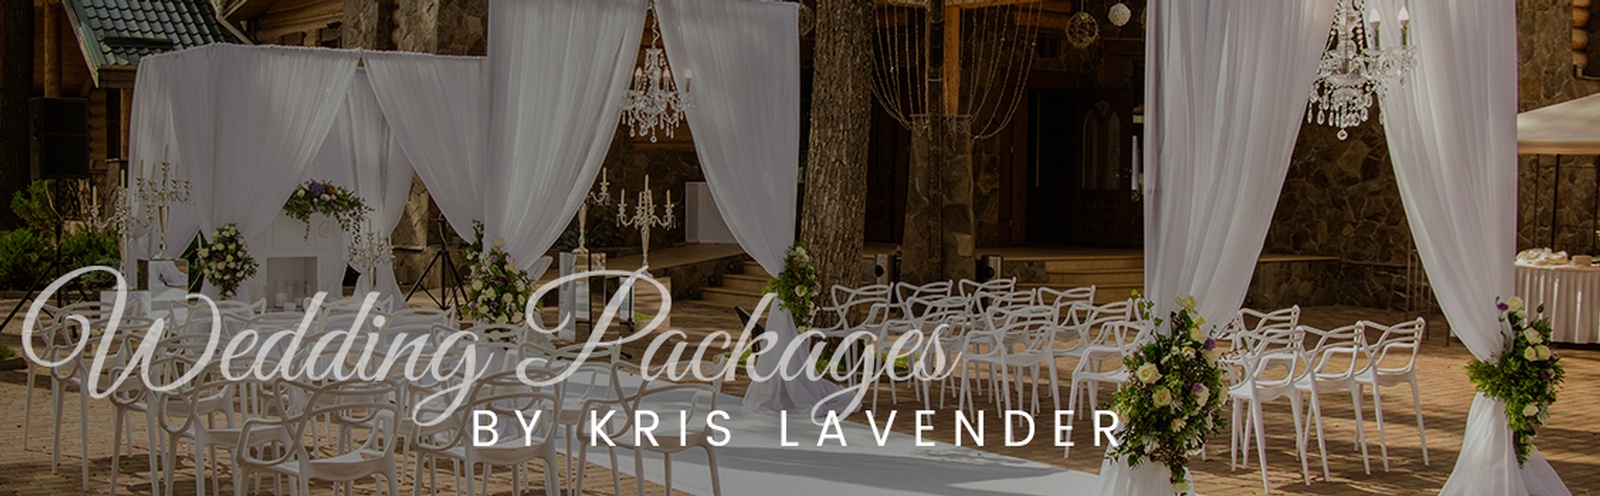 Wedding Packages Atlanta by Kris Lavender